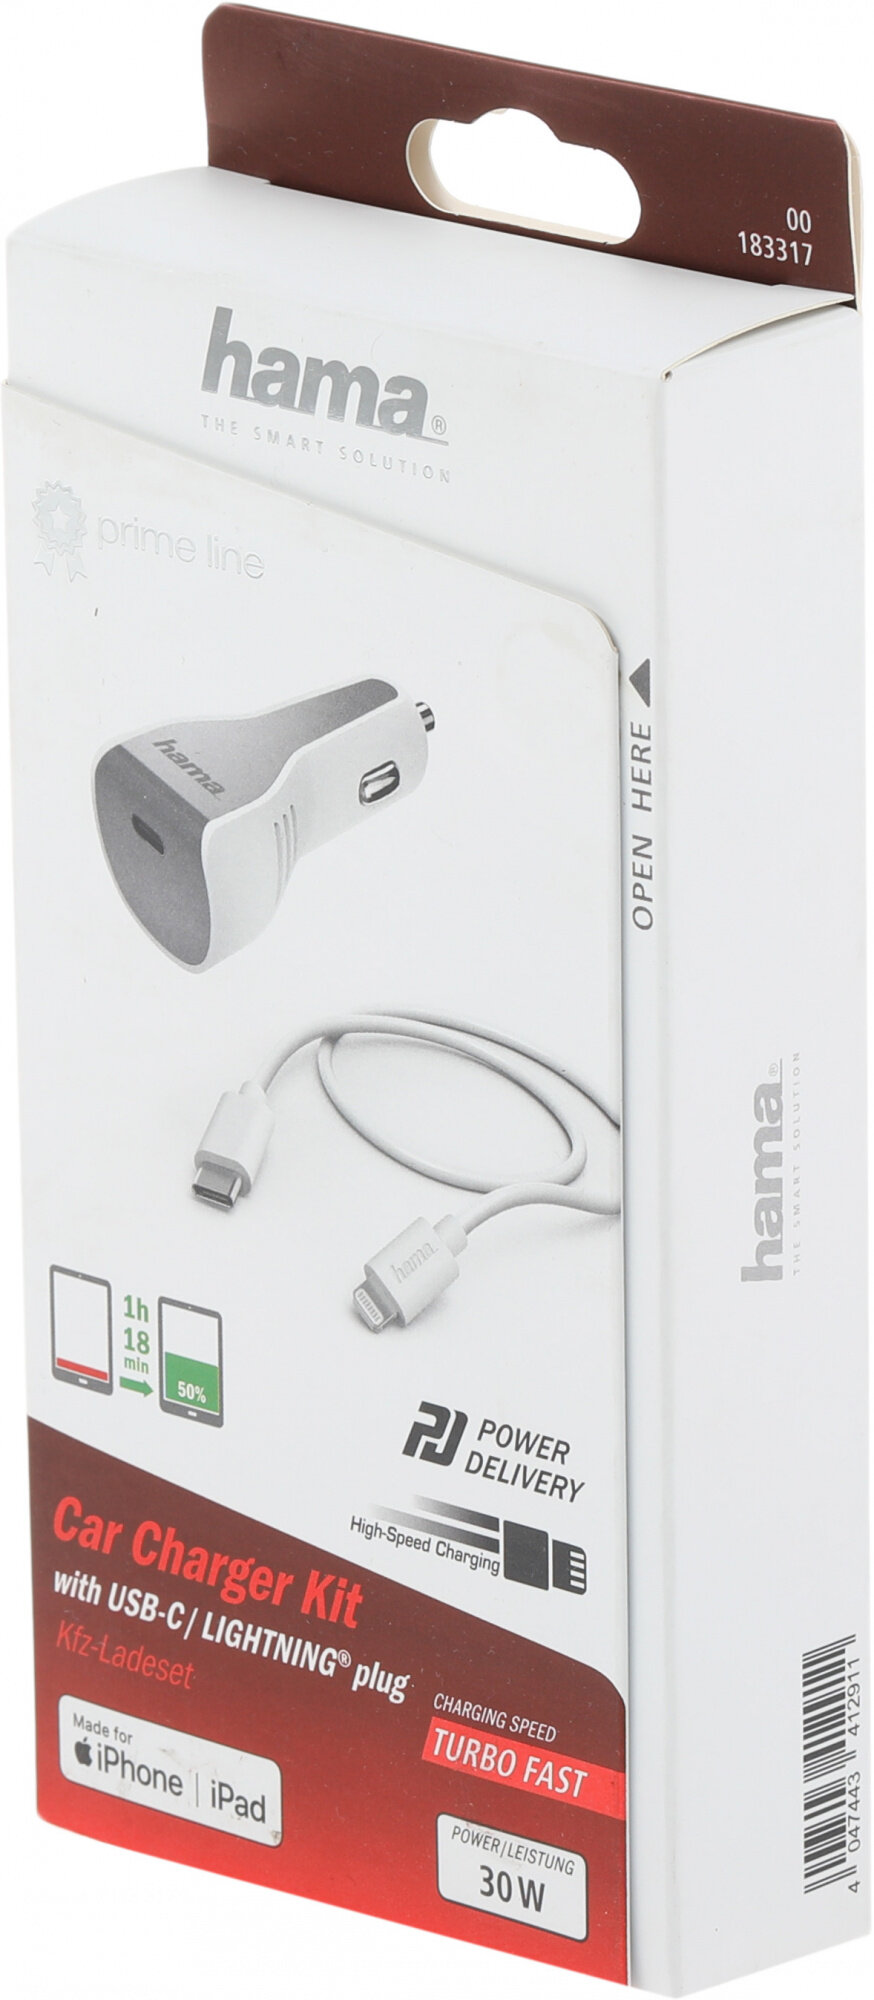 Комплект зарядного устройства HAMA H-183317, USB type-C, 8-pin Lightning (Apple), 3A, белый - фото №6